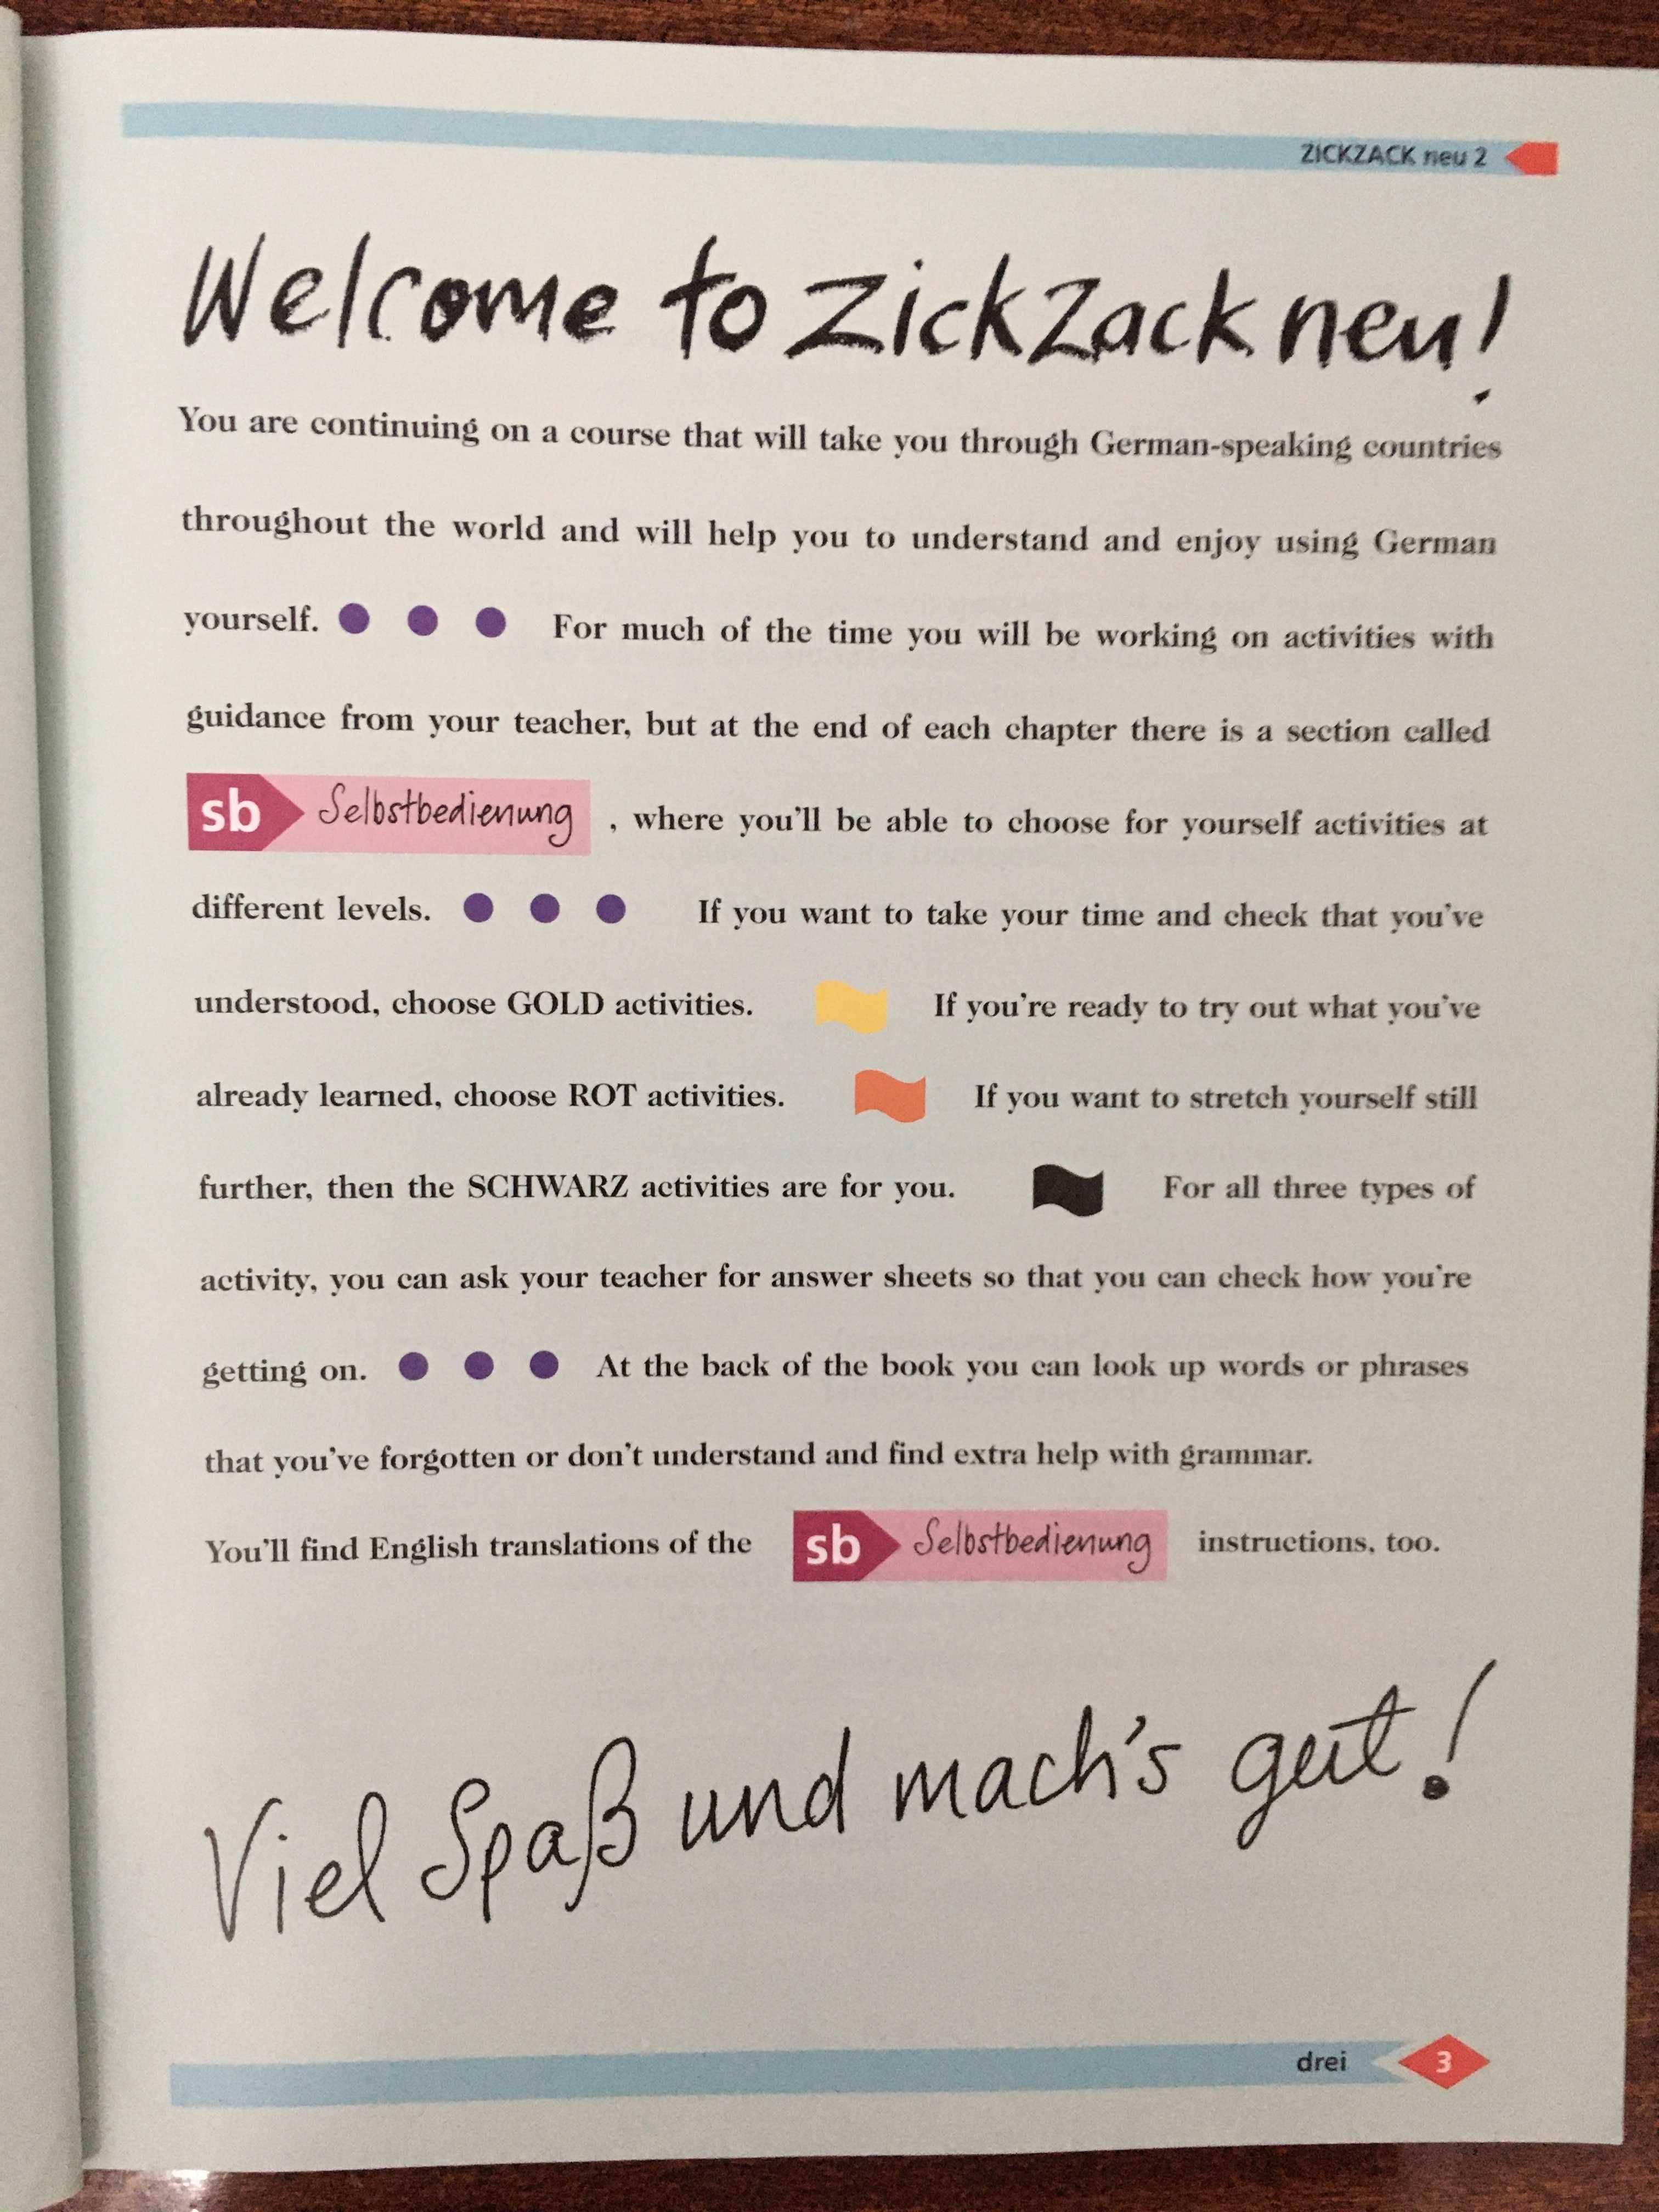 Zickzack Neu учебник немецкого языка